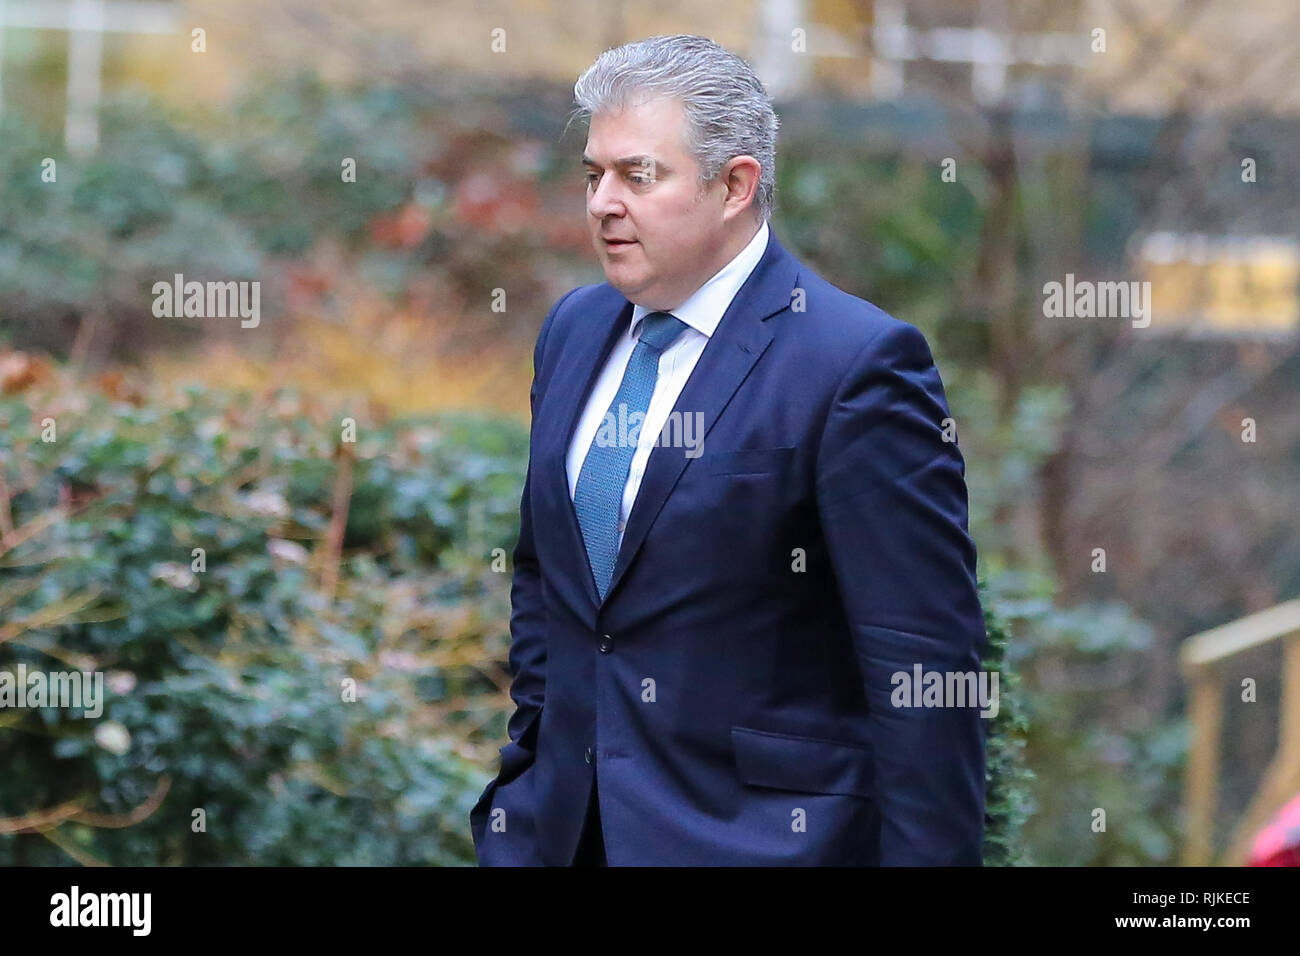 Brandon Lewis - Parti conservateur Président vu arriver au Downing Street pour assister à la réunion hebdomadaire du Cabinet. Banque D'Images